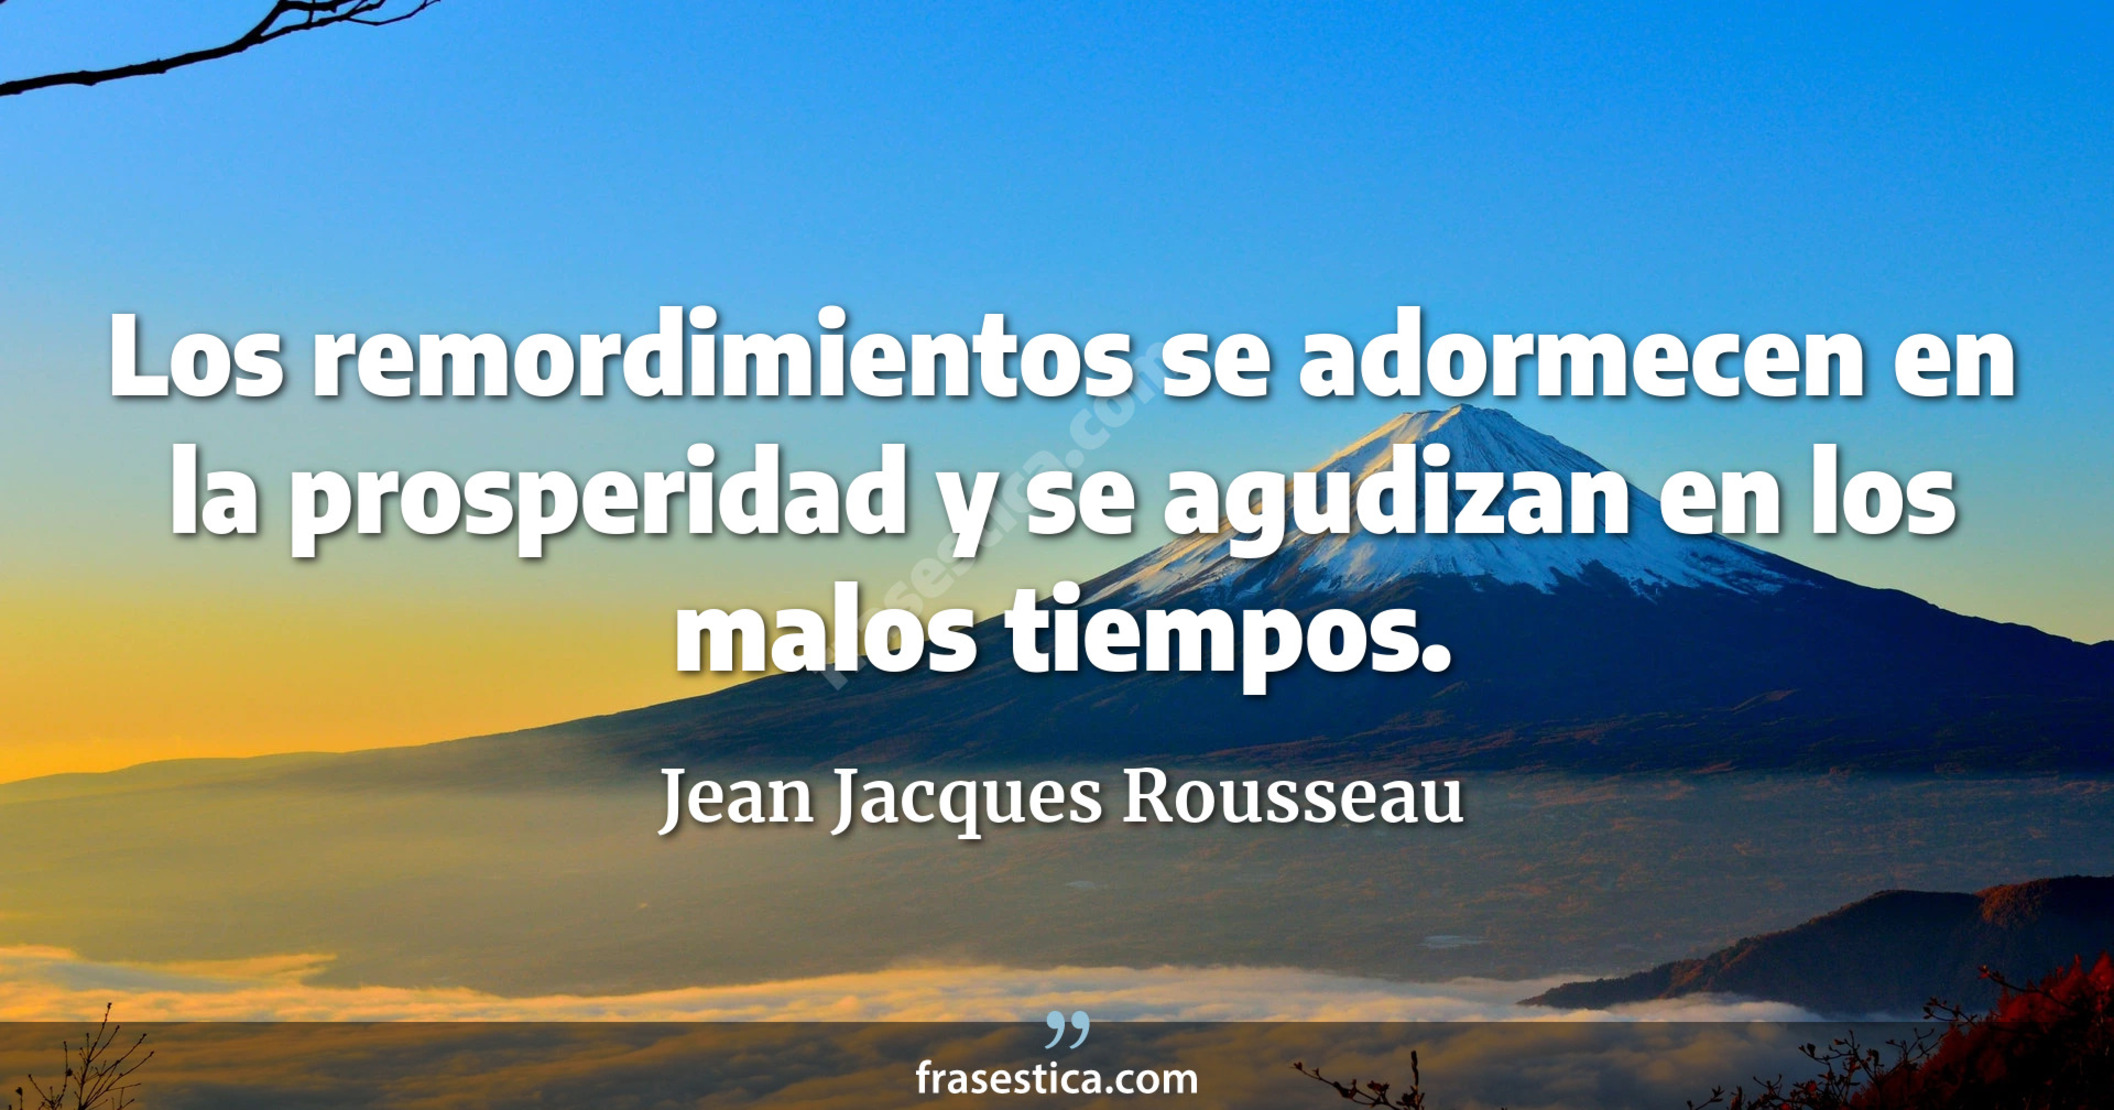 Los remordimientos se adormecen en la prosperidad y se agudizan en los malos tiempos. - Jean Jacques Rousseau